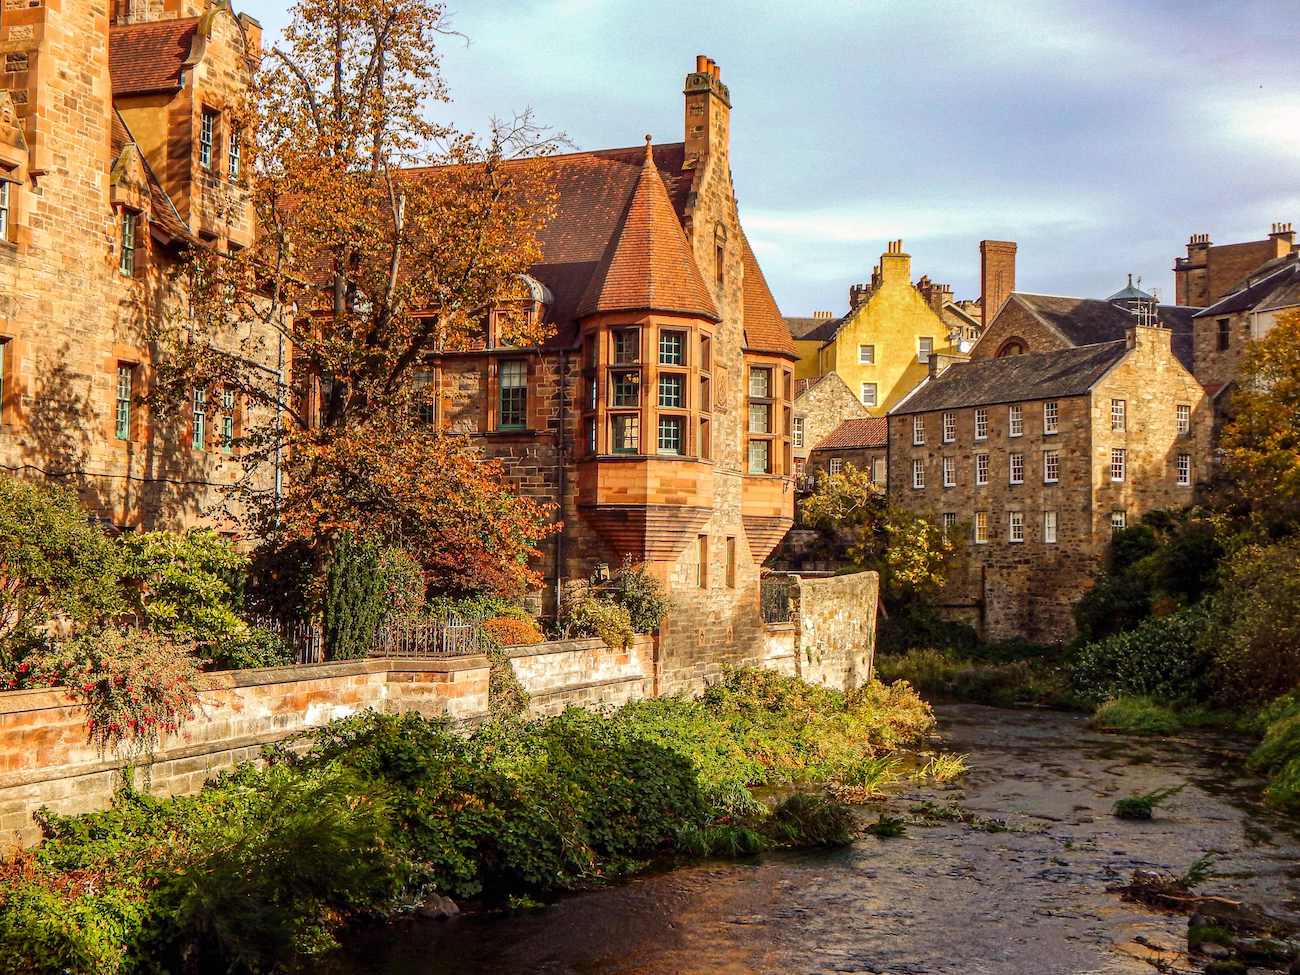 Picturesque Dean Village in Edinburgh